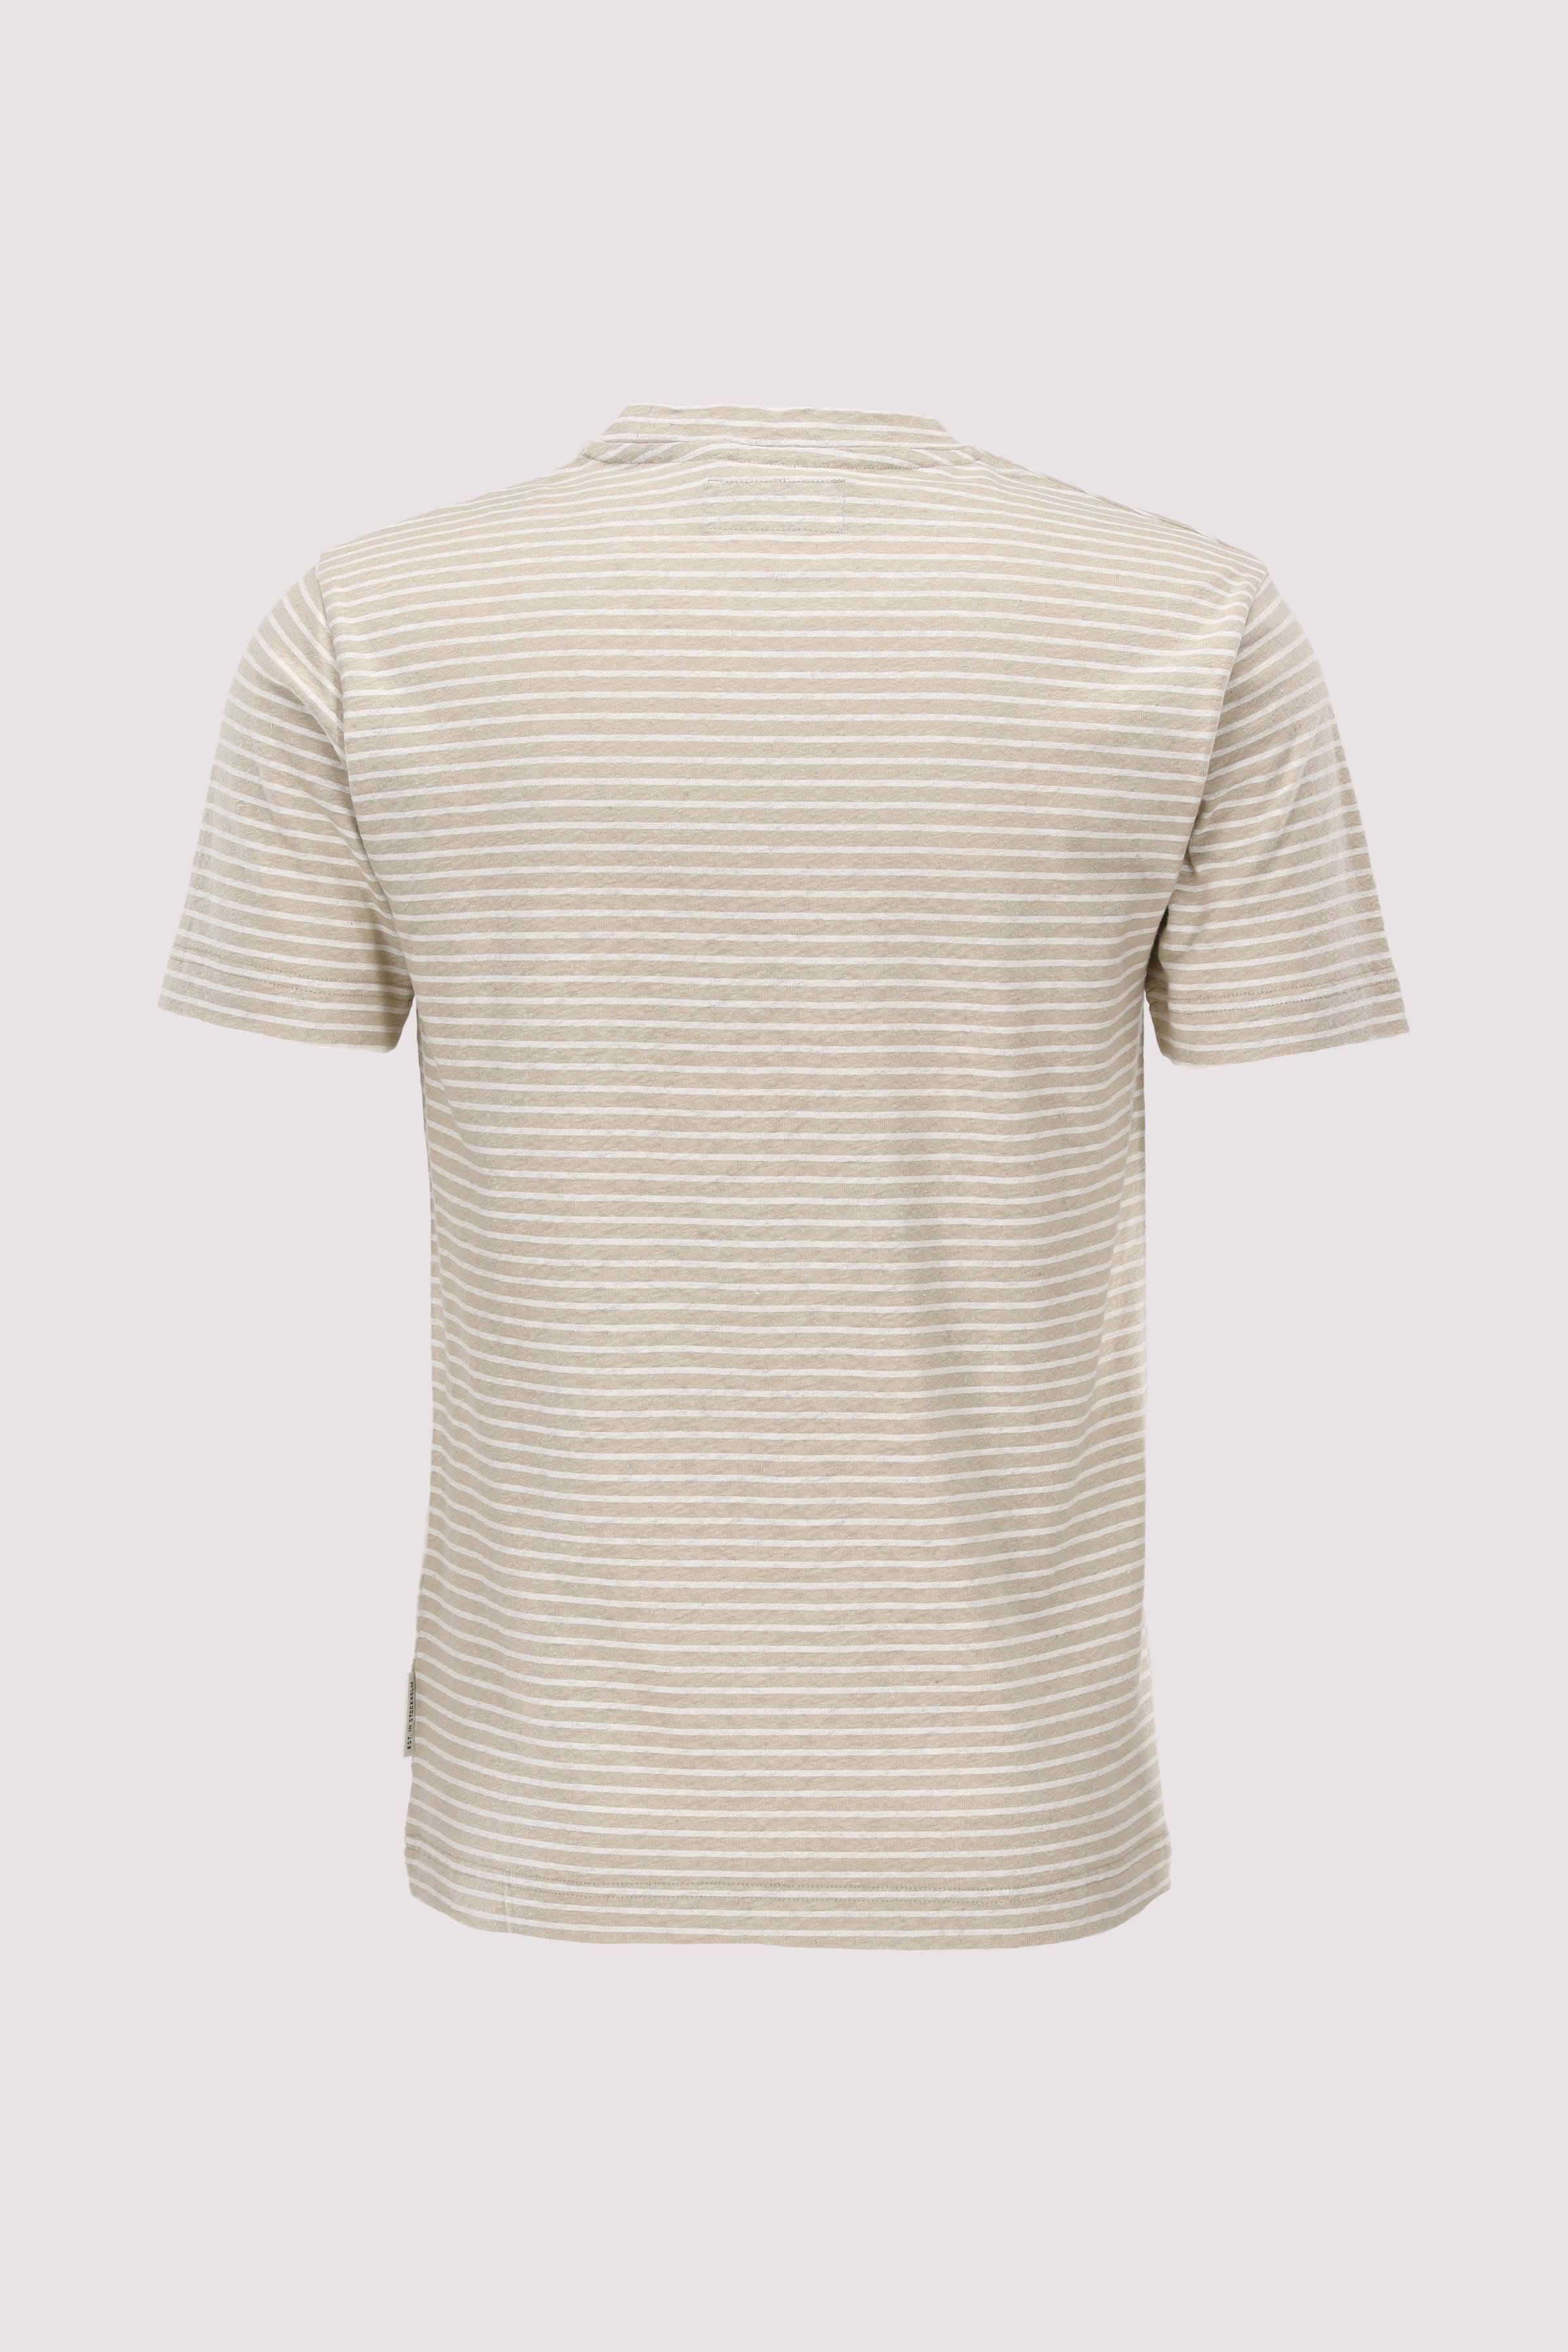 T-shirt, short sleeve, cotton 